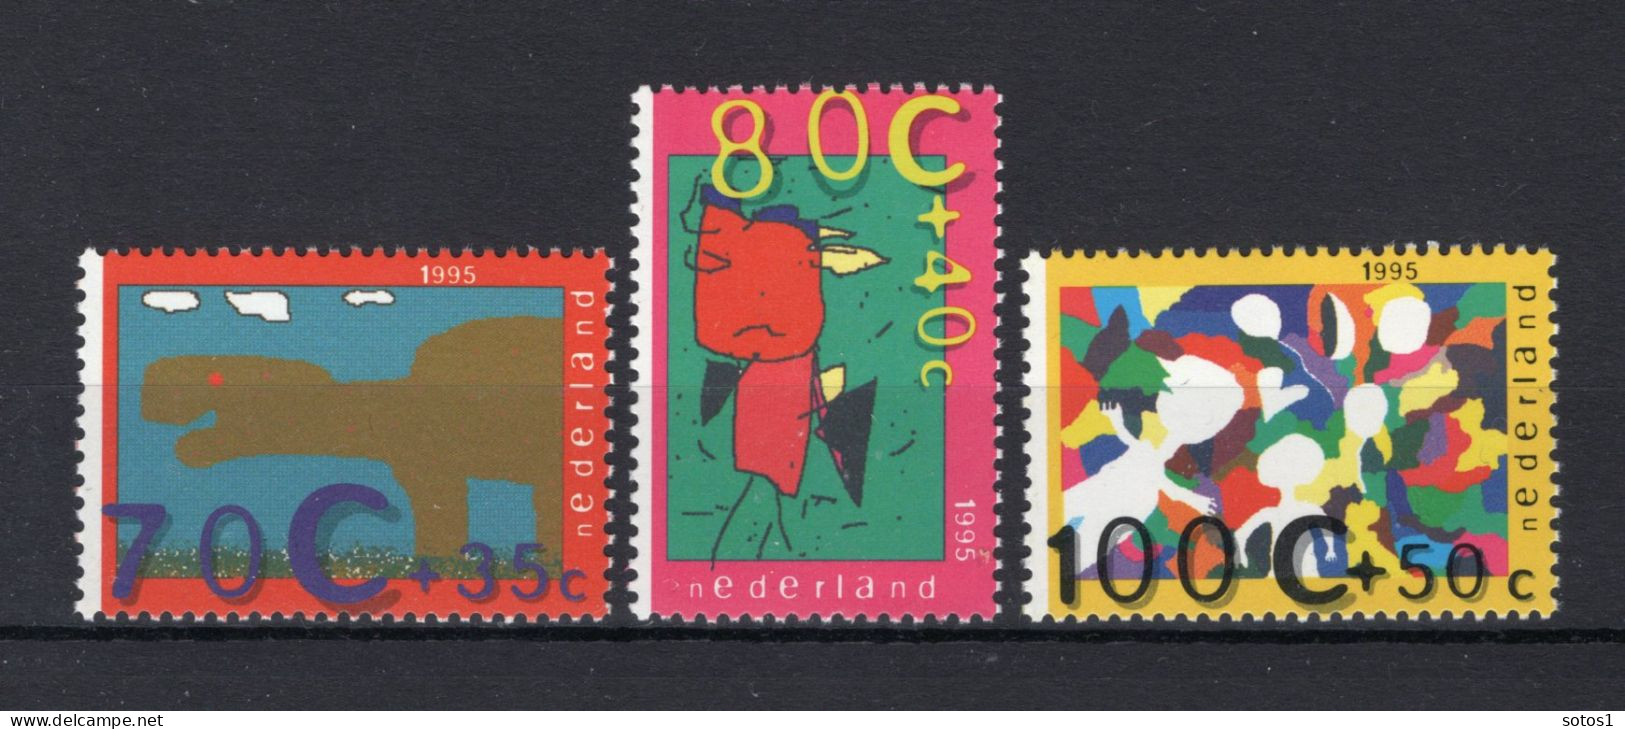 NEDERLAND 1658/1660 MNH 1995 - Kinderzegels -2 - Unused Stamps